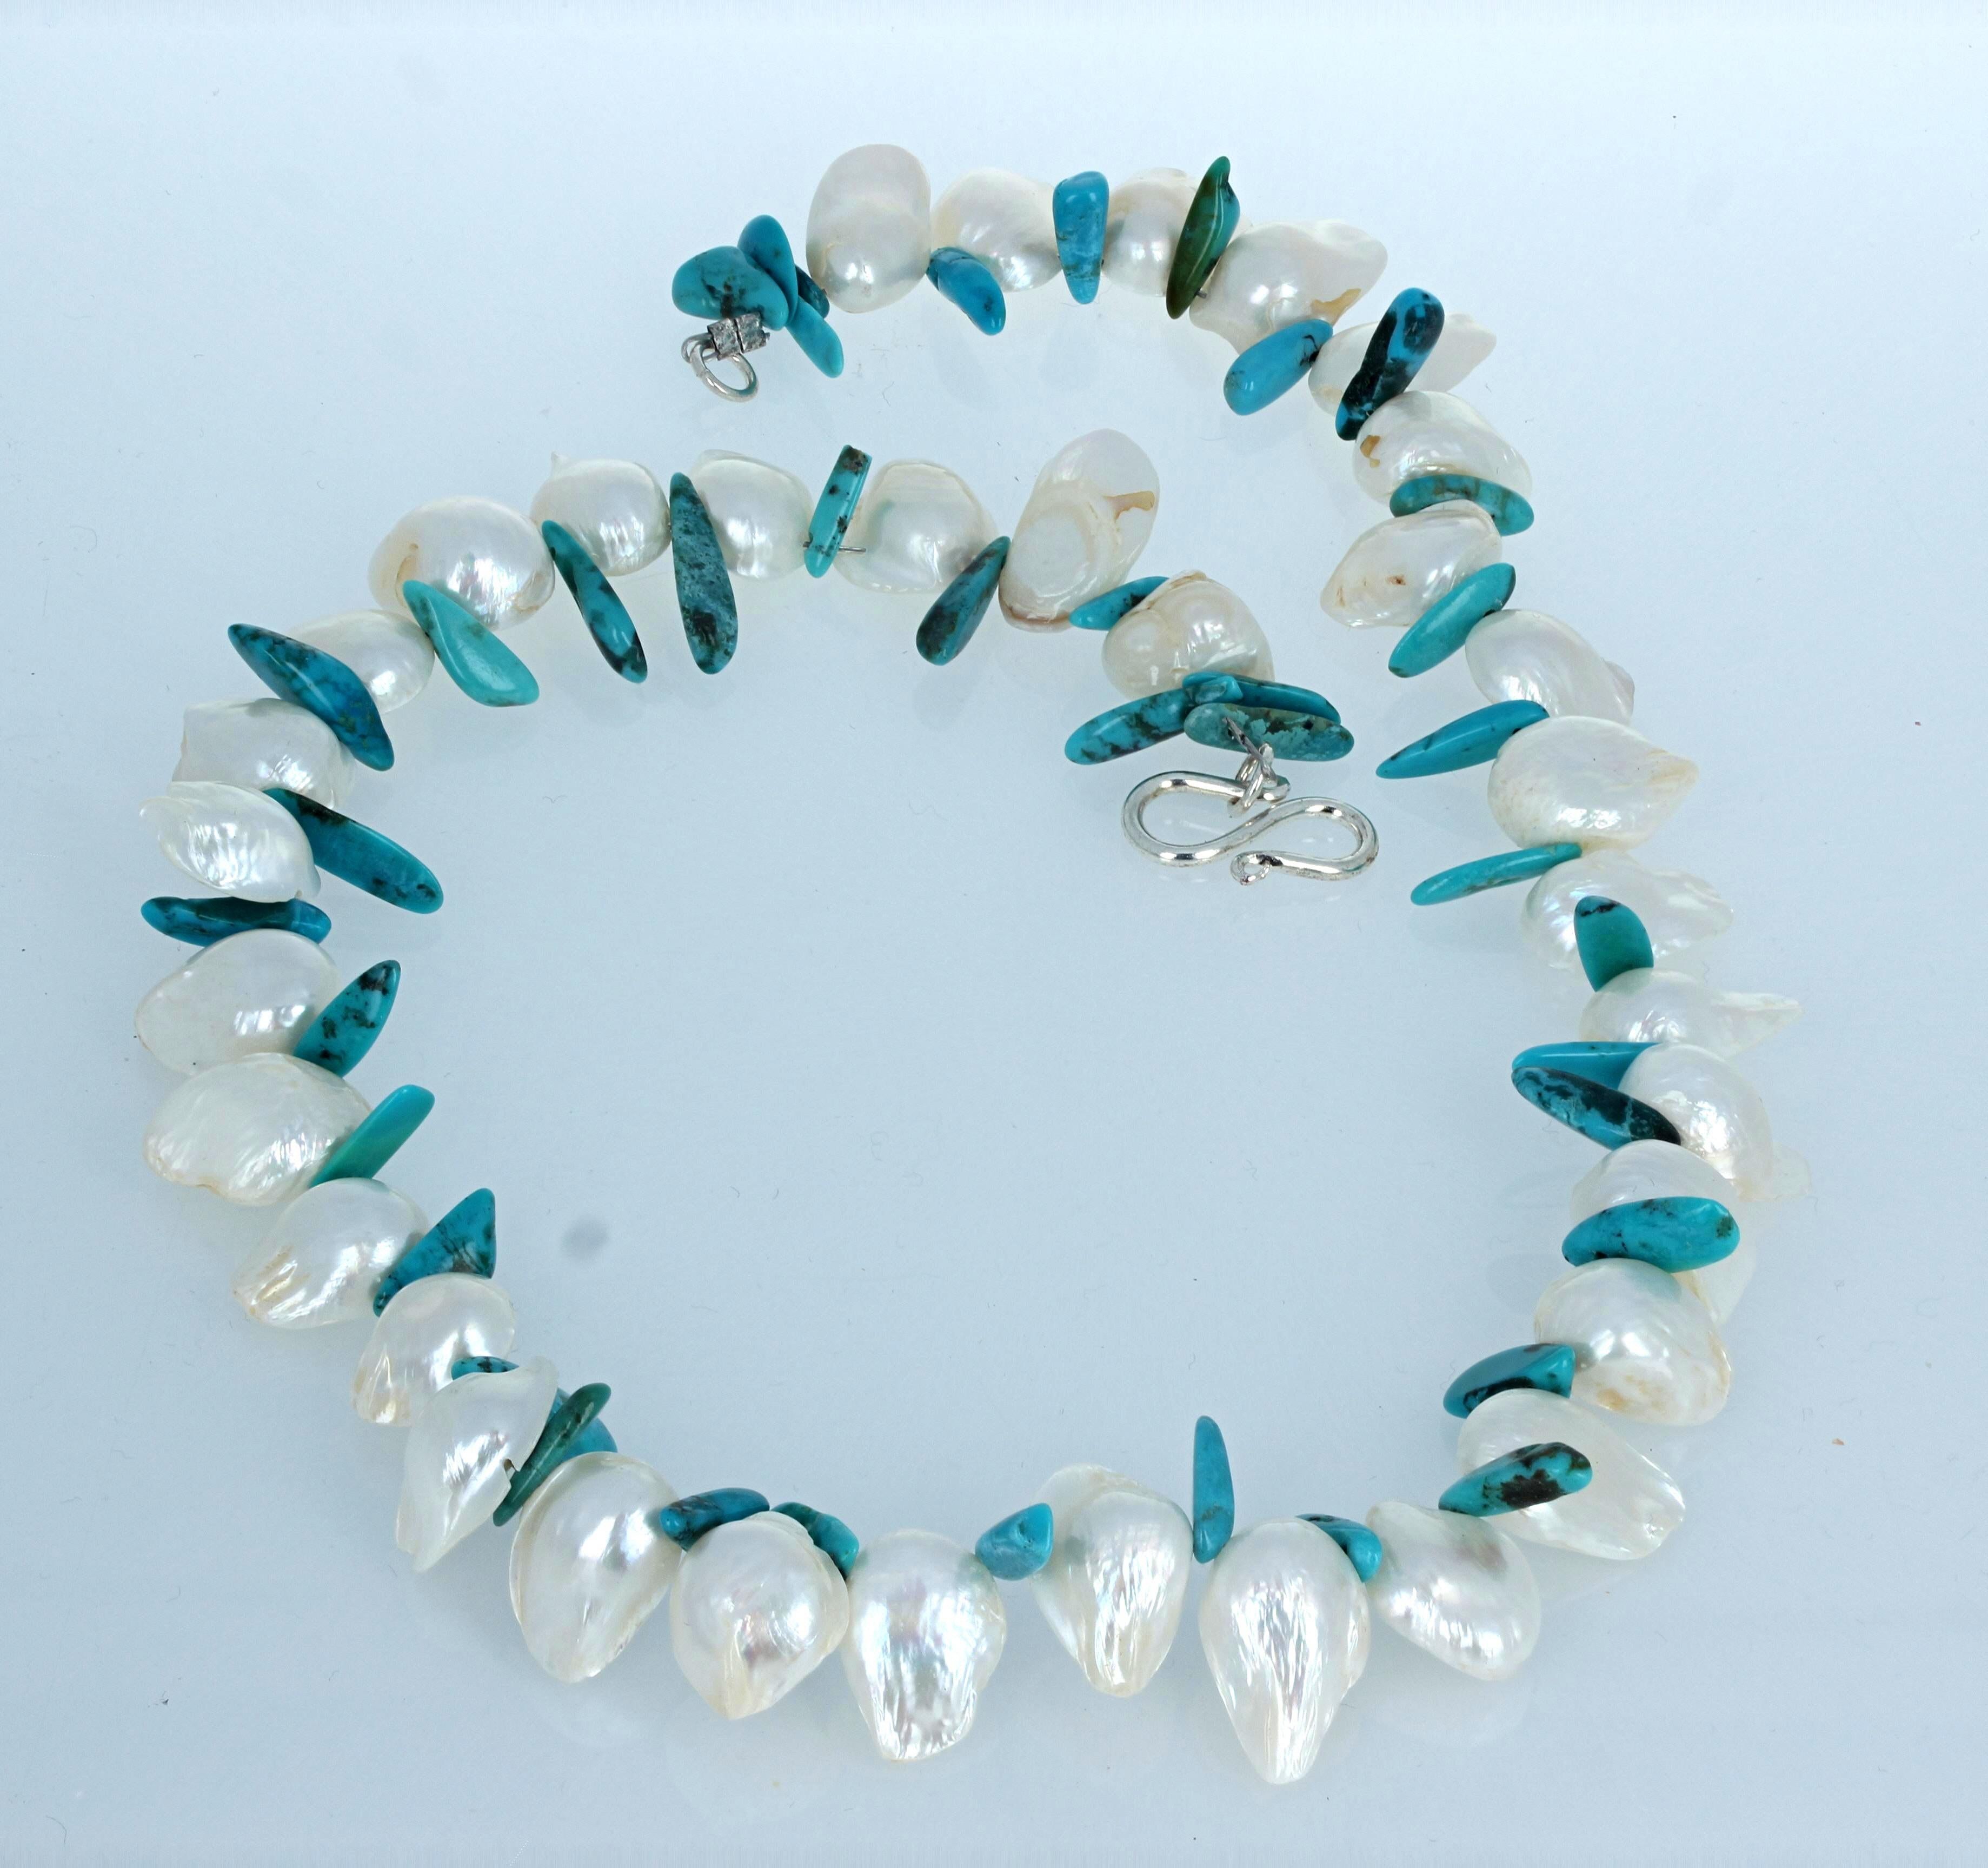 Ce collier de perles blanches d'eau douce est rehaussé d'une turquoise naturelle.  Les perles mesurent environ 11 mm de large et 15 mm de long.  Les turquoises sont hautement polies et ne vous piquent pas.  Ils se balancent joyeusement grâce au